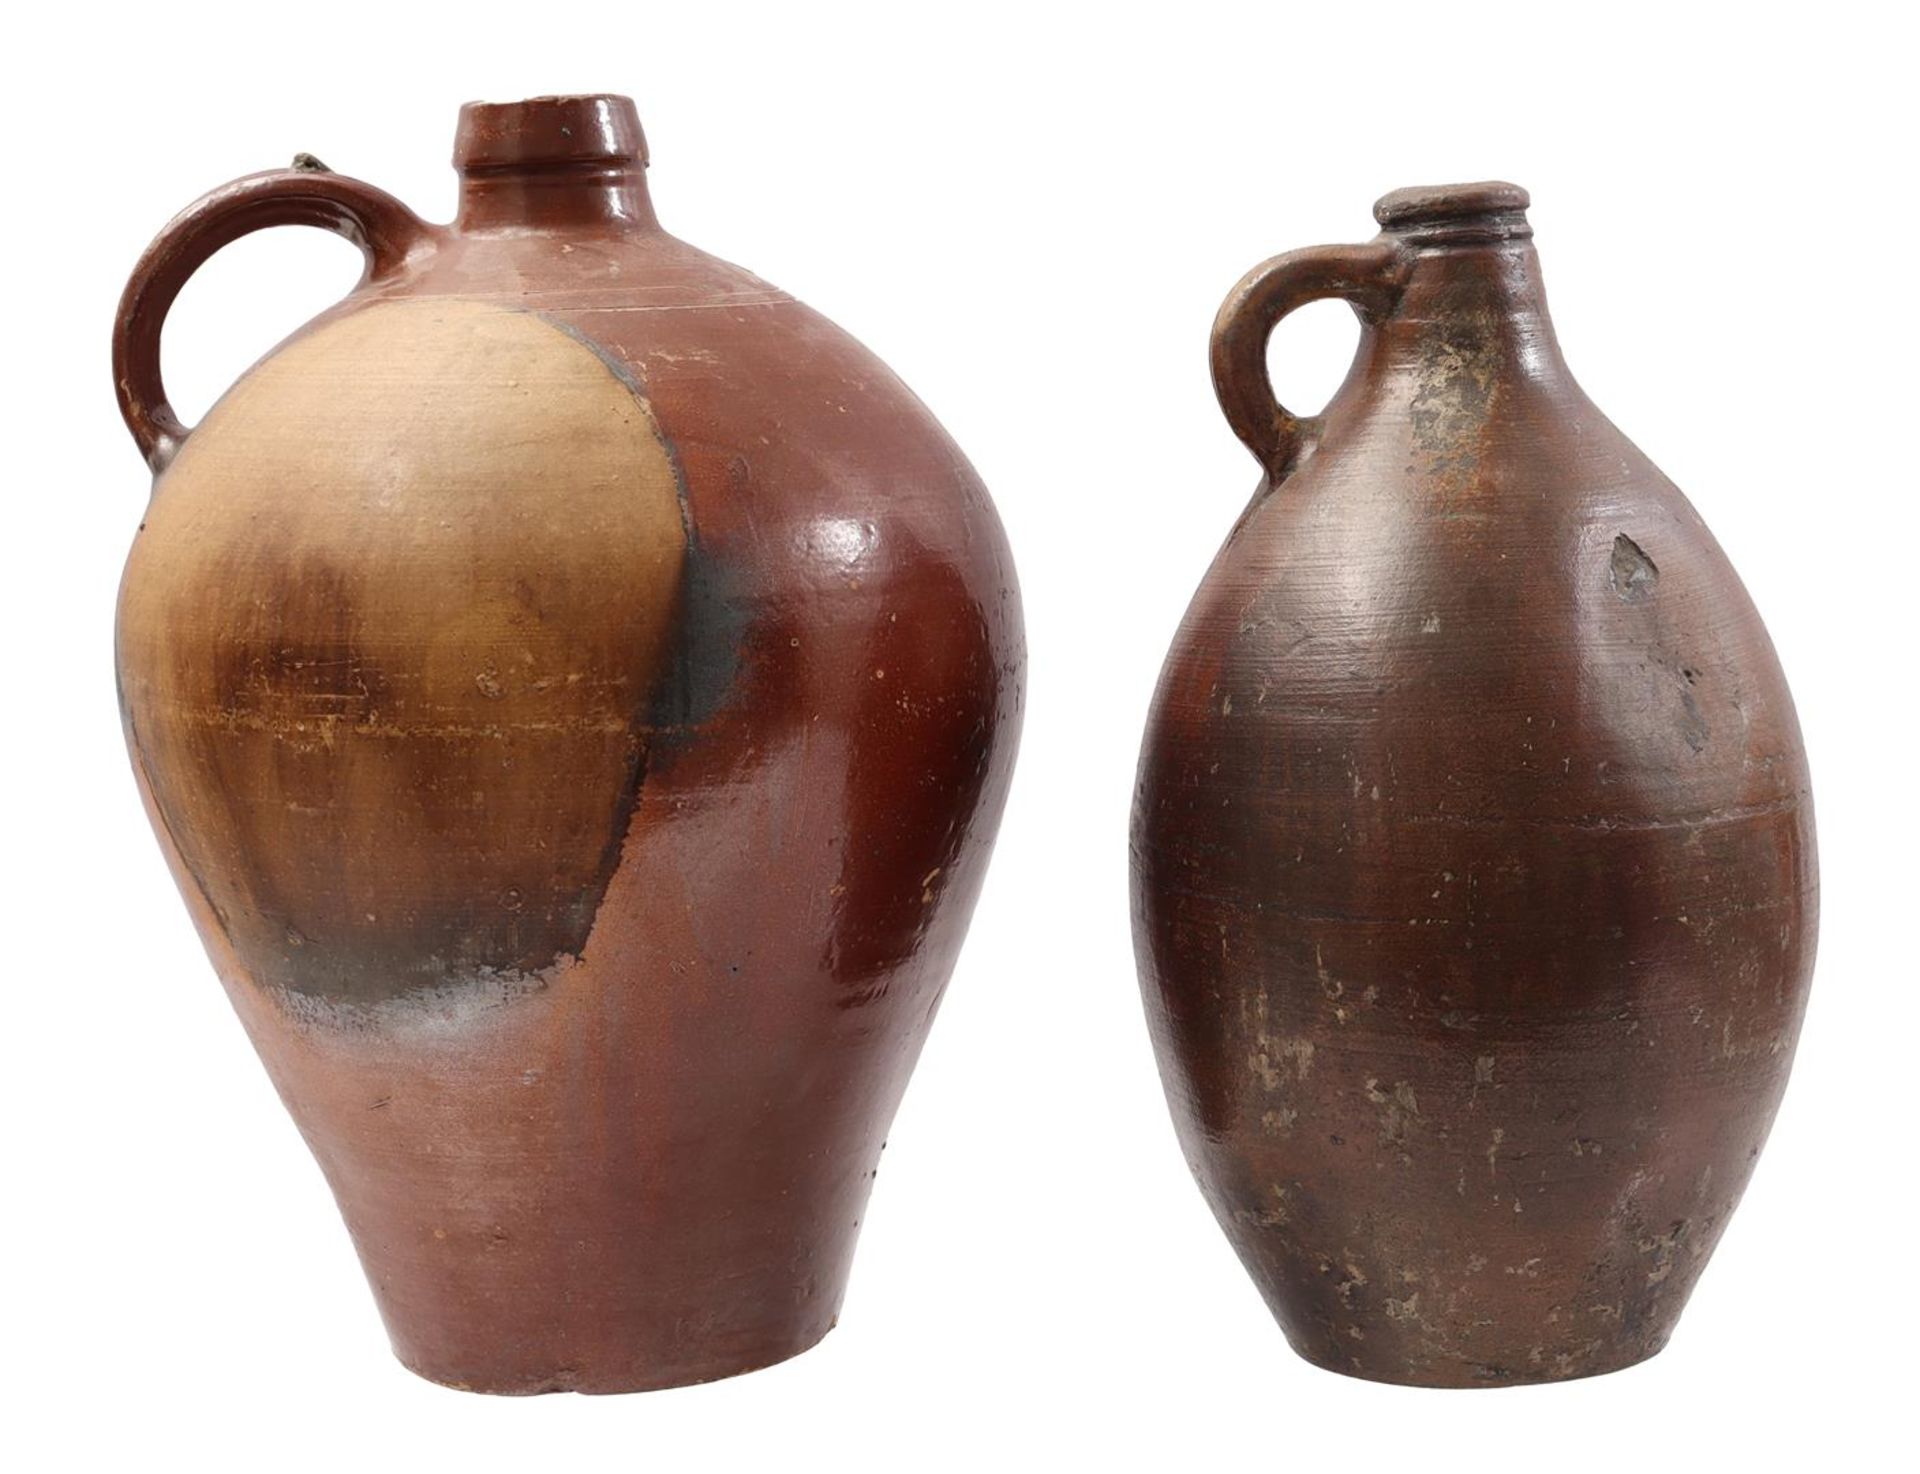 2 stoneware jugs